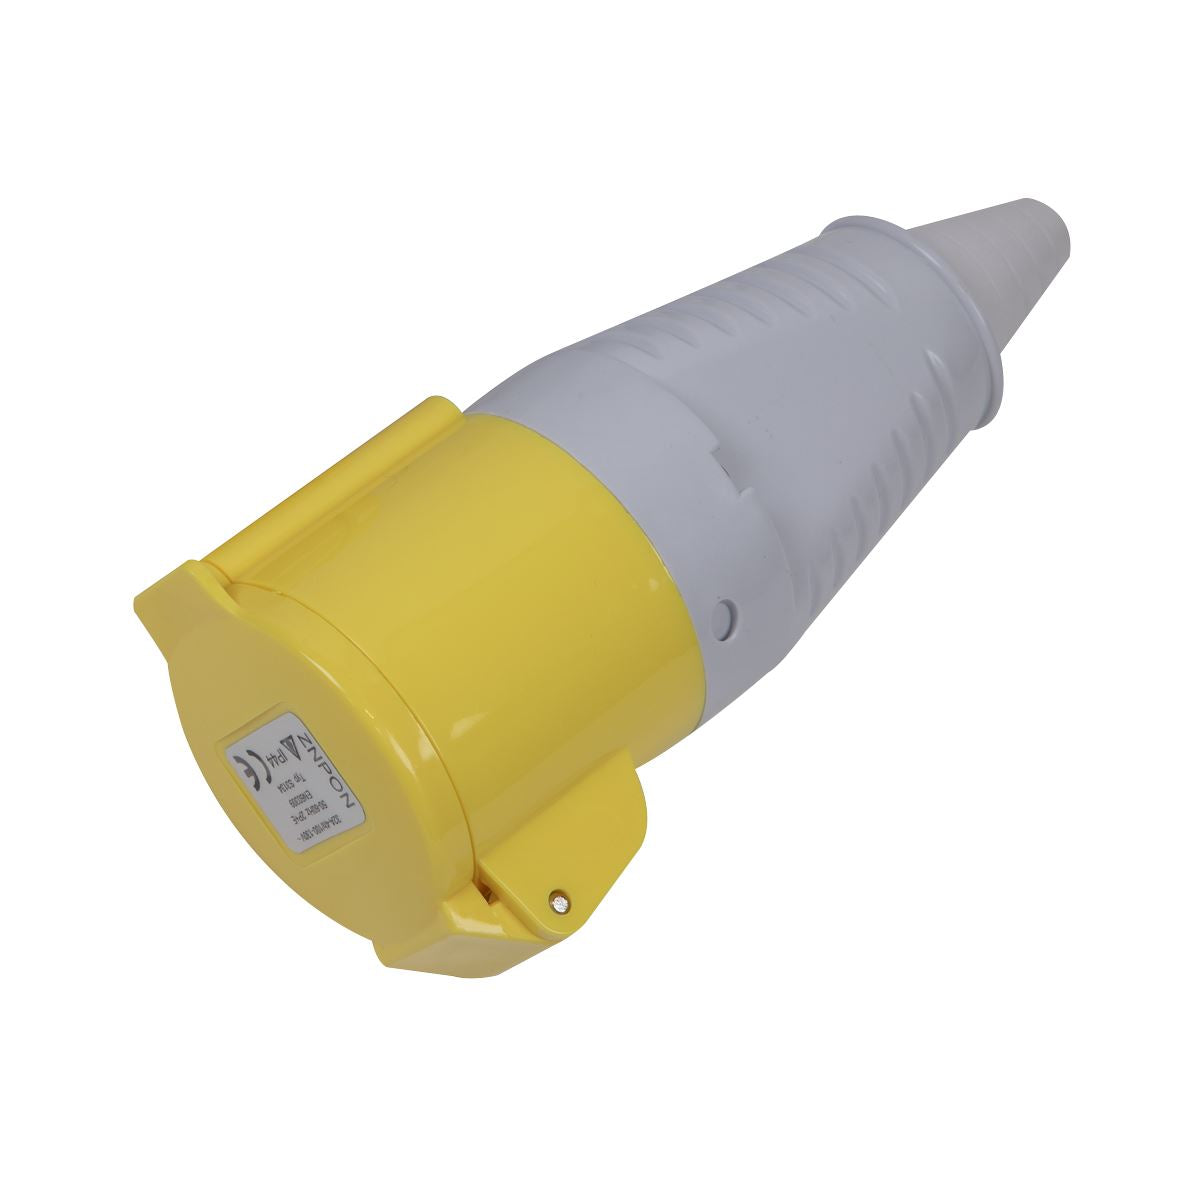 Sealey Yellow Socket 110V 32A